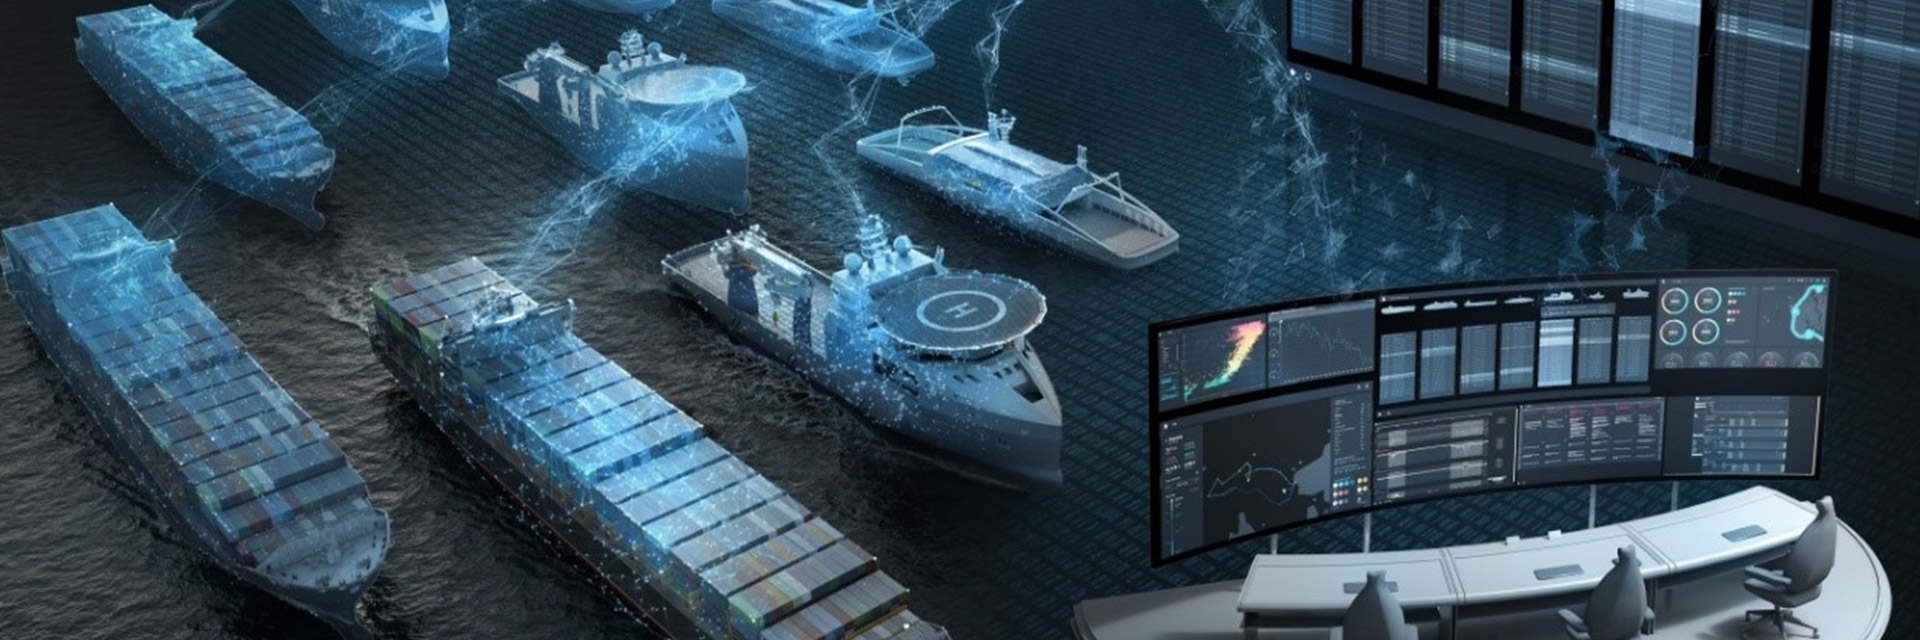 Системотехника автоматизированных объектов морской техники